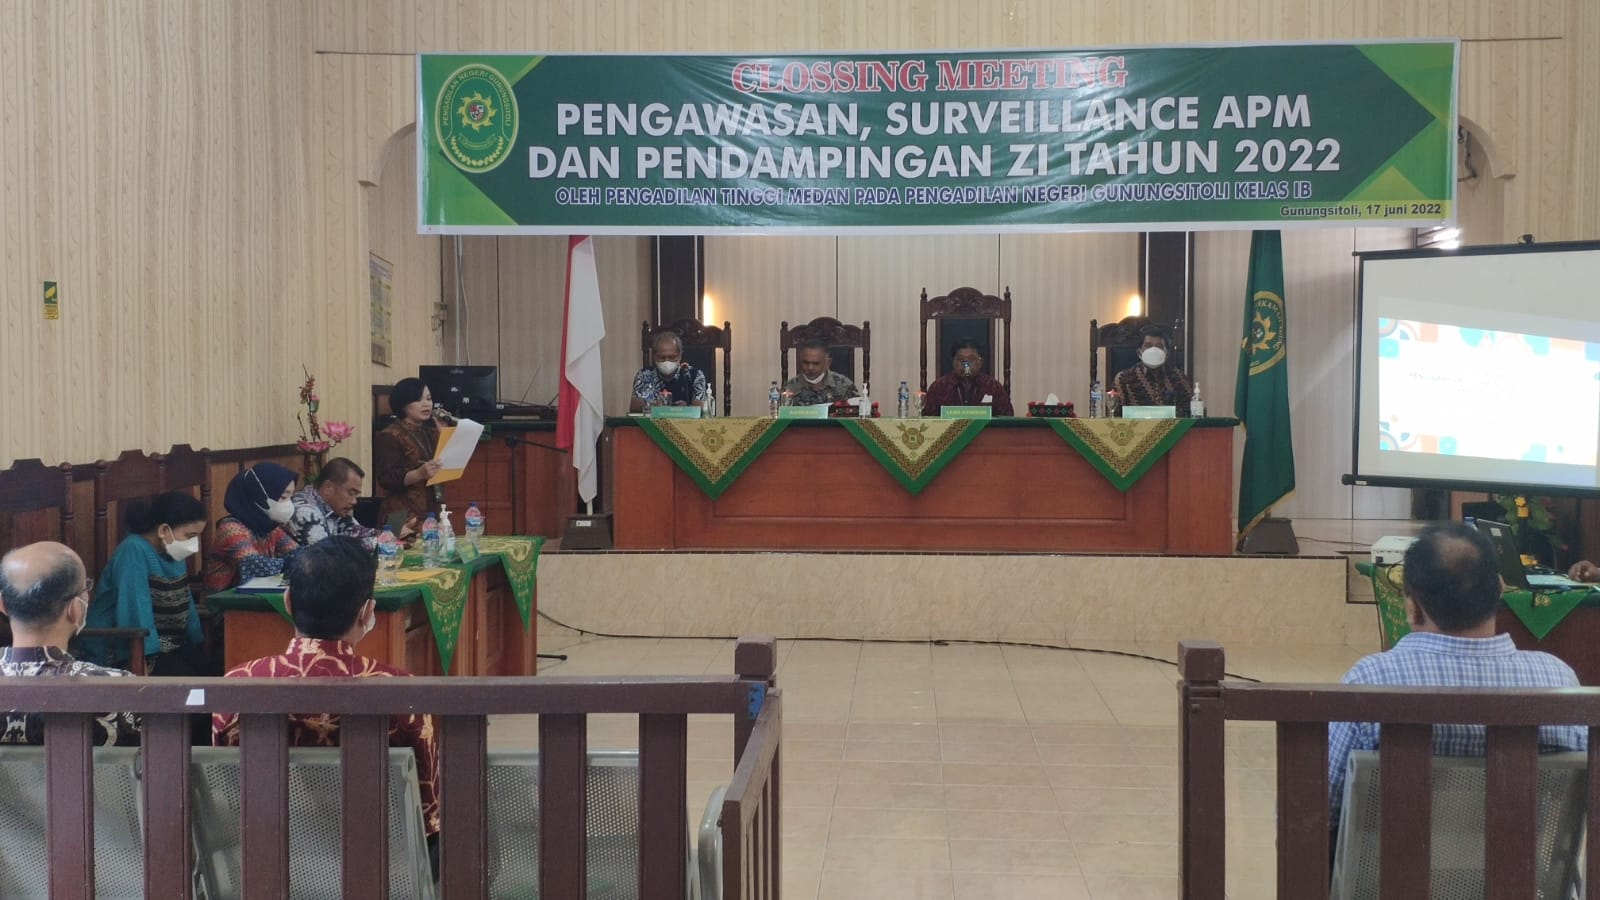 Closing Meeting Pembinaan Surveilan APM dan Pendampingan ZI Oleh Pengadilan Tinggi Medan